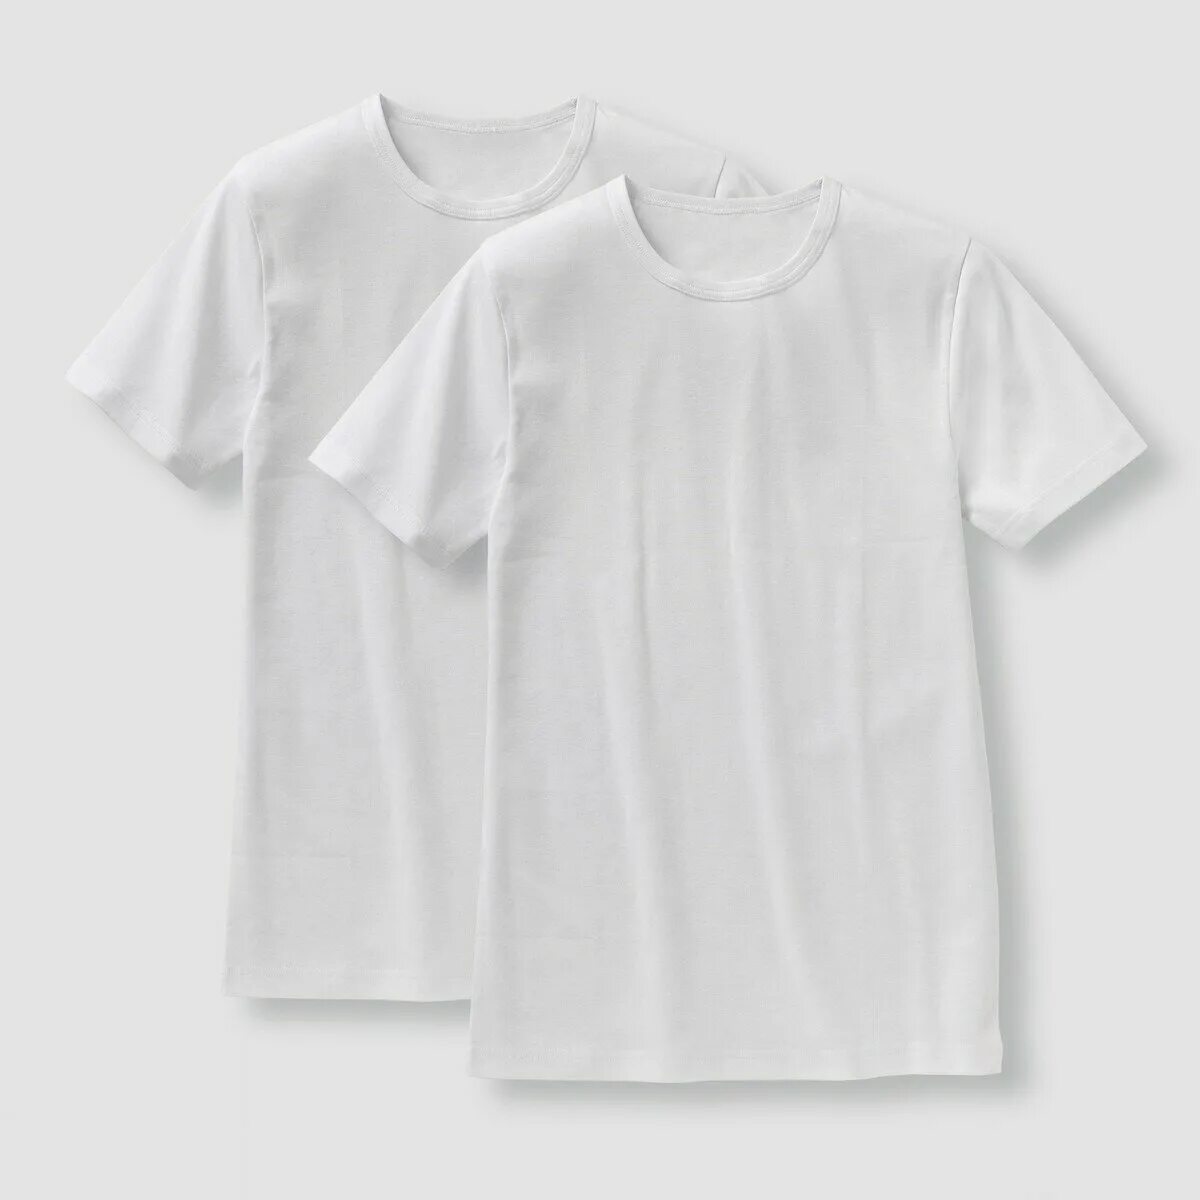 Белая футболка. Футболка белая хлопок. Белая хлопковая футболка. Органический хлопок футболка.